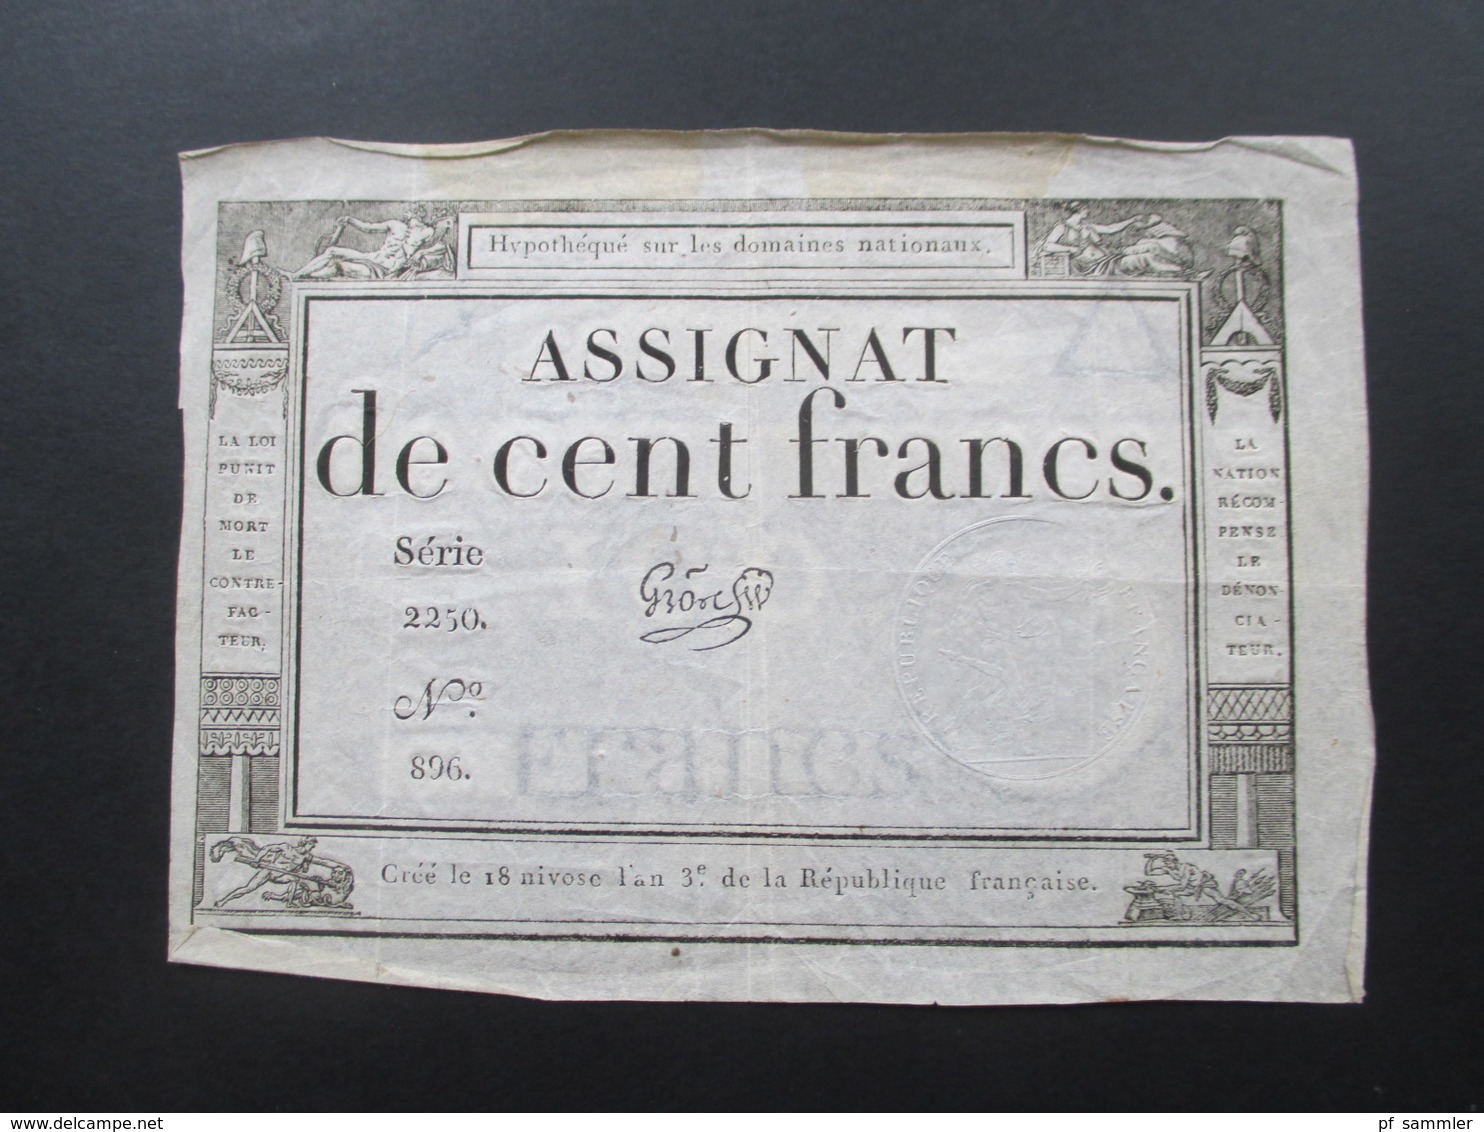 Frankreich Assignat De Cent Francs Serie 2250 No 896. Cree Le 18 Nivose L'an 3e Republique Francaise - ...-1889 Francs Im 19. Jh.